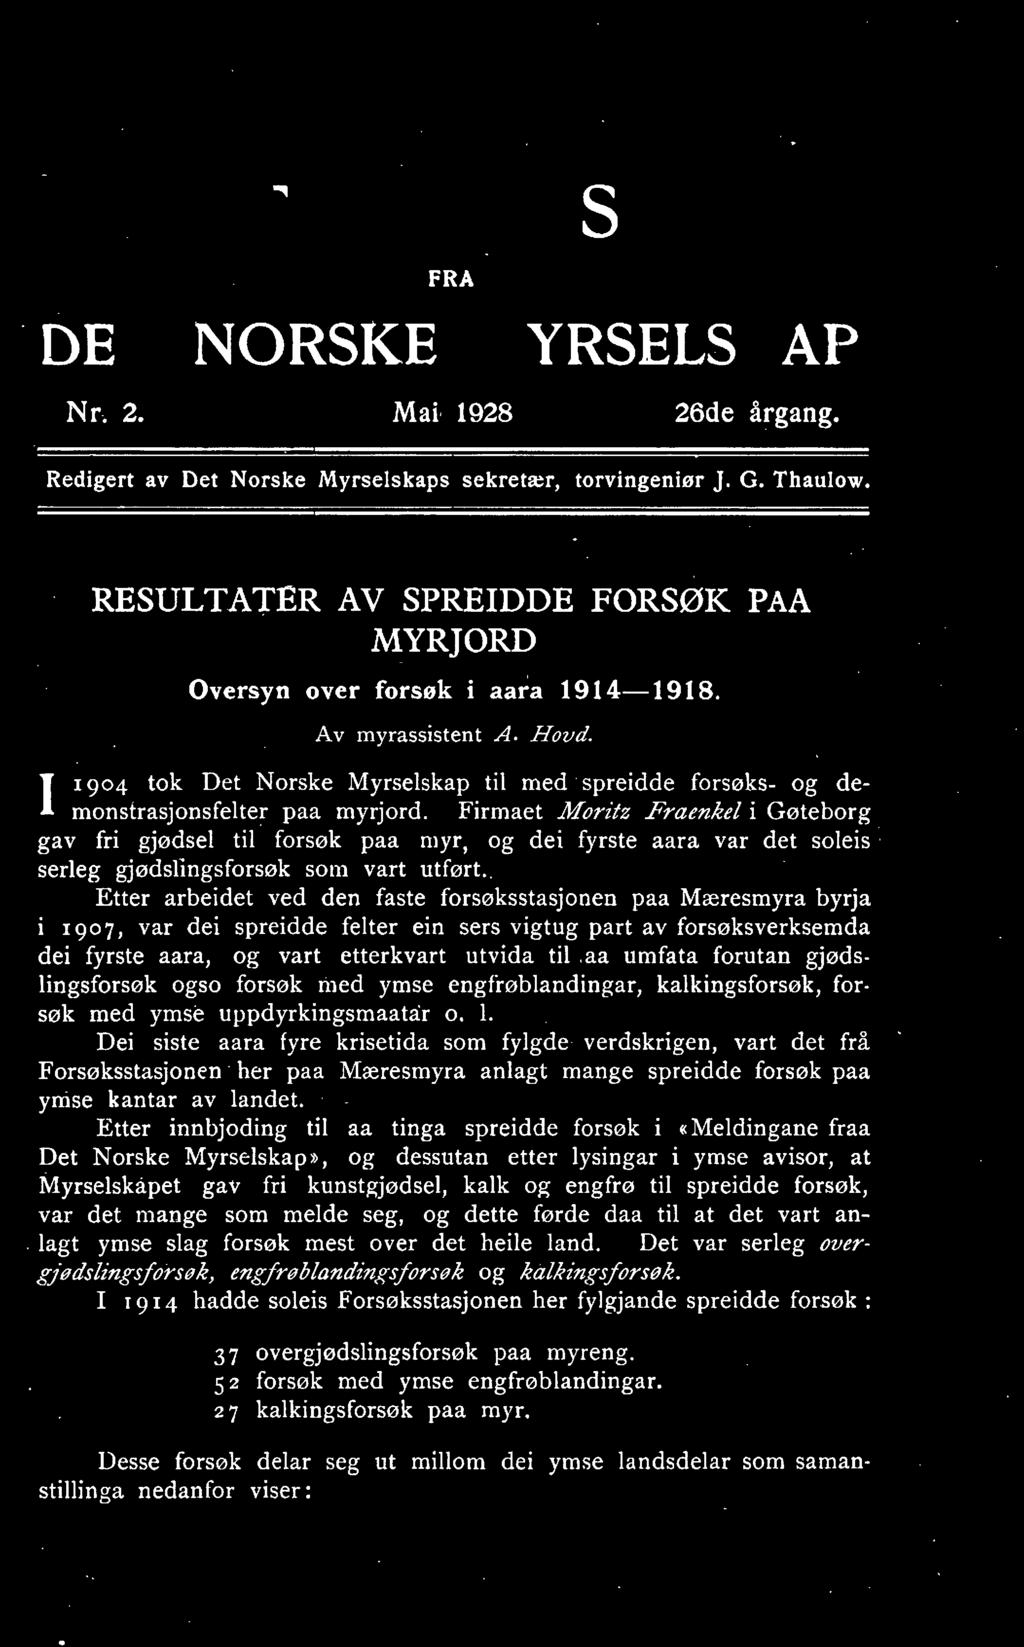 1904 tok Det Norske Myrselskap til med spreidde forsøks- og demonstrasjonsfelter paa myrjord.